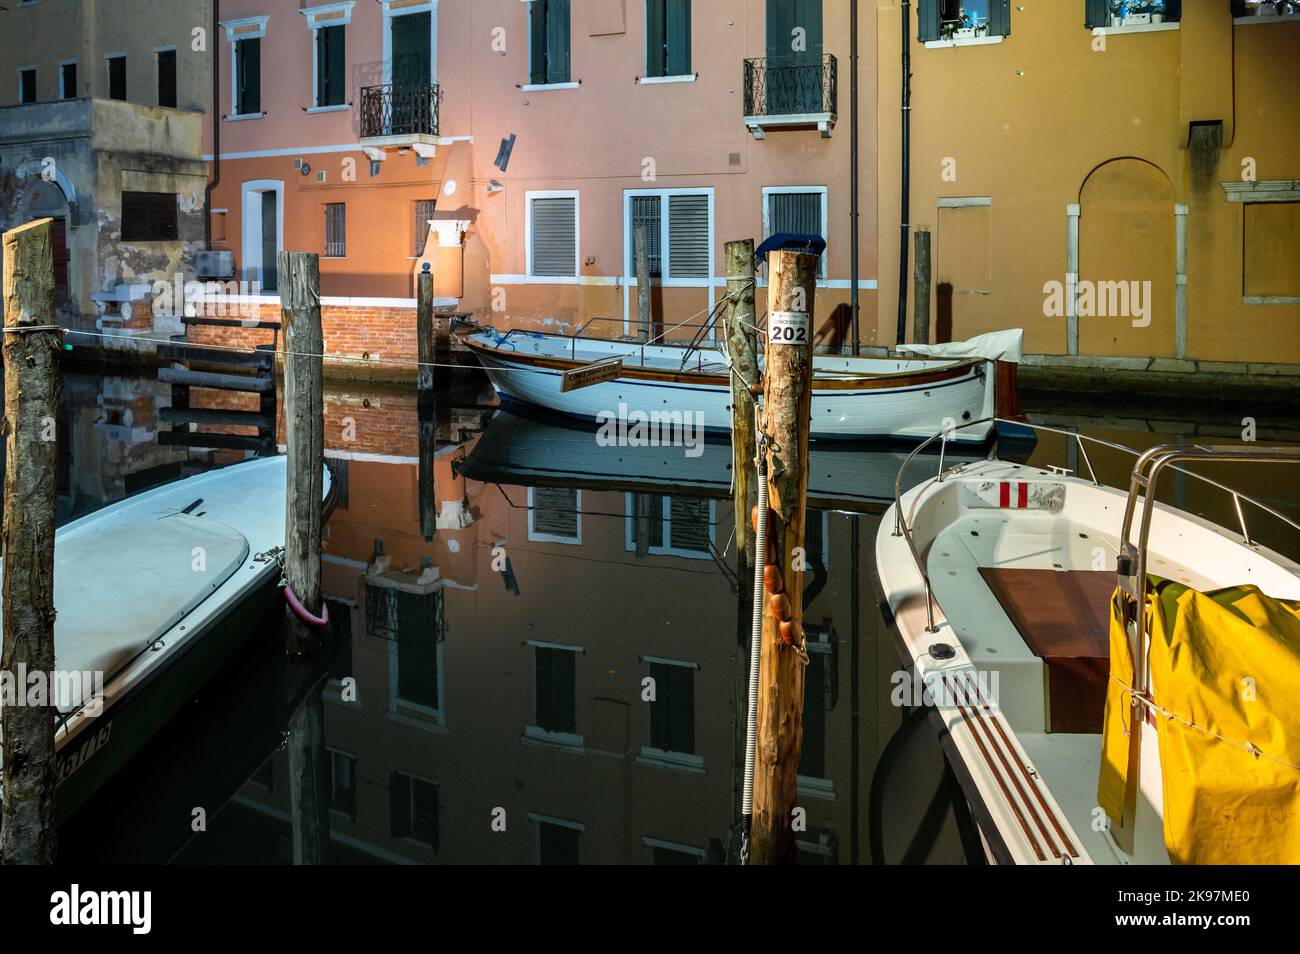 20. August 2022, chioggia, Italien: Gesamtansicht der Kanäle von Chioogia (Spitzname ''Klein-Venedig'') mit den Booten und Gebäuden, die sich in der Dämmerung im Wasser unter dem künstlichen Licht spiegeln. Chioggia, eine Stadt in der venezianischen Lagune, die viele Touristen beherbergt, die Venedig besuchen, wurde nicht in den venezianischen Stadtkern aufgenommen. Touristen, die dort bleiben, müssen die Steuer jedes Mal zahlen, wenn sie Venedig ab dem 16. Januar 2023 besuchen. (Bild: © Laurent Coust/SOPA Images via ZUMA Press Wire) Stockfoto